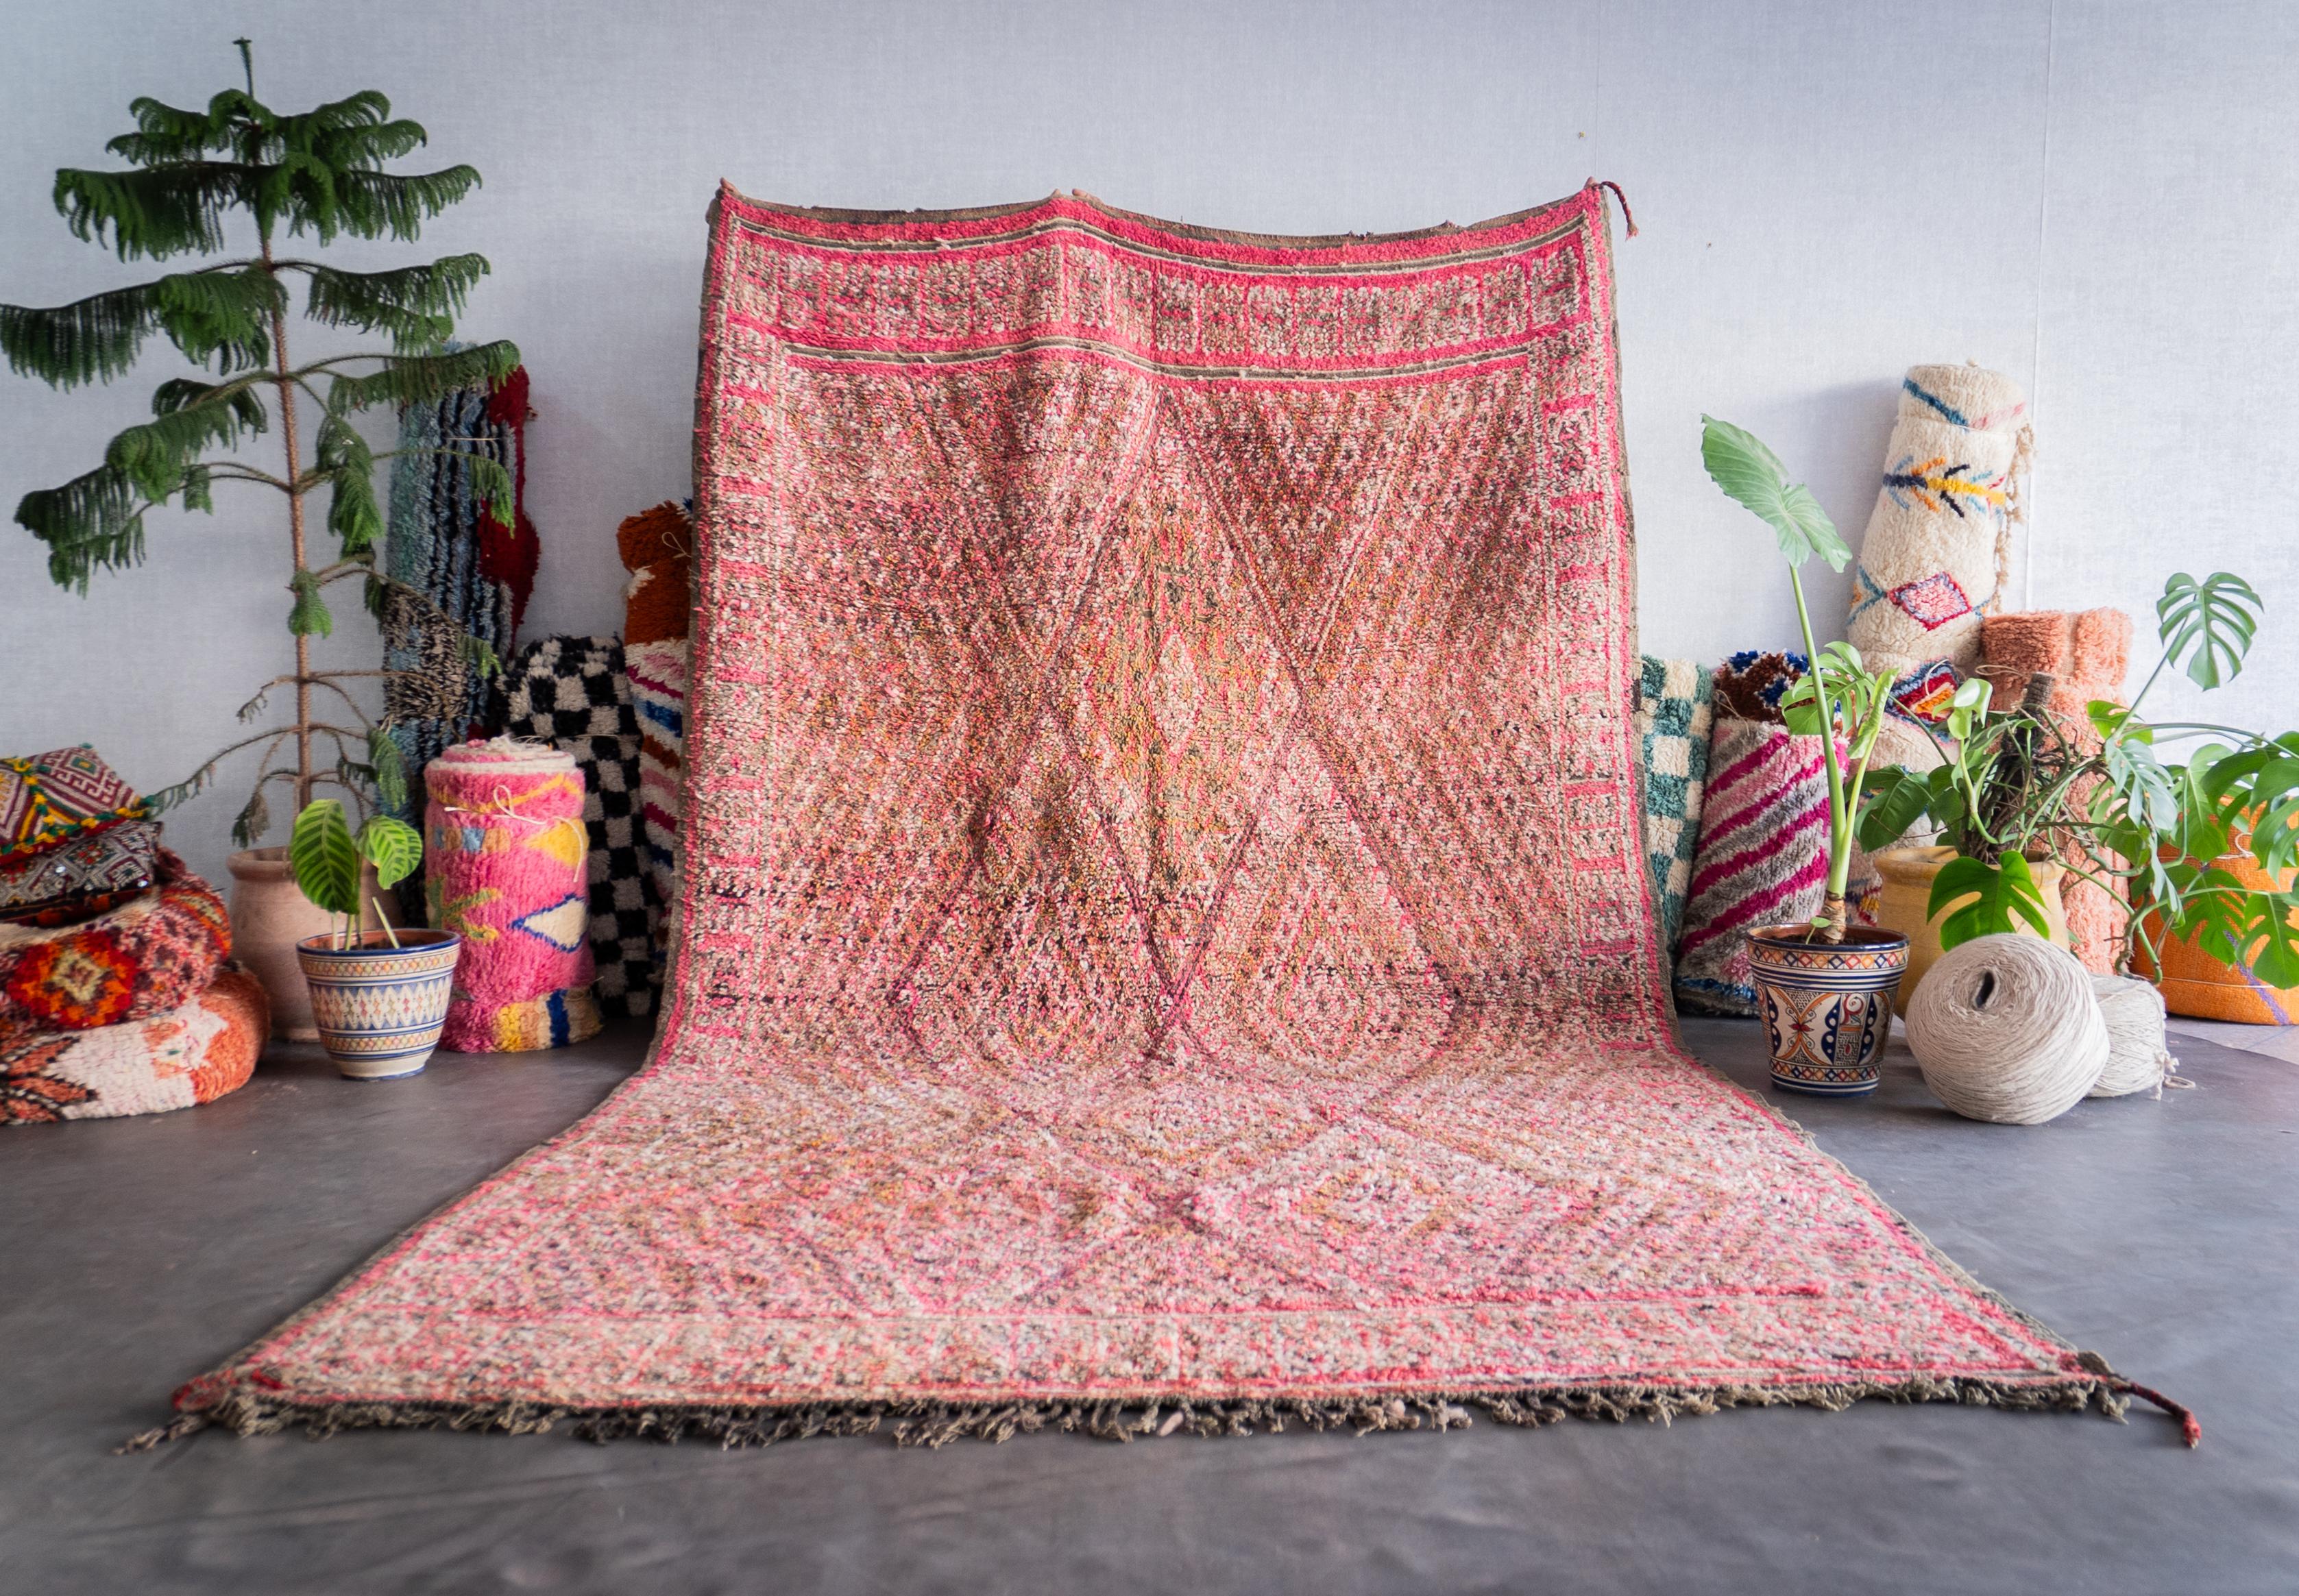 Entdecken Sie das reiche Erbe, das in unserem rosa marokkanischen Vintage-Teppich eingewoben ist. Jeder Berberteppich wird von erfahrenen Kunsthandwerkern mit bewährten Techniken handgefertigt und ist ein einzigartiges Zeugnis der marokkanischen